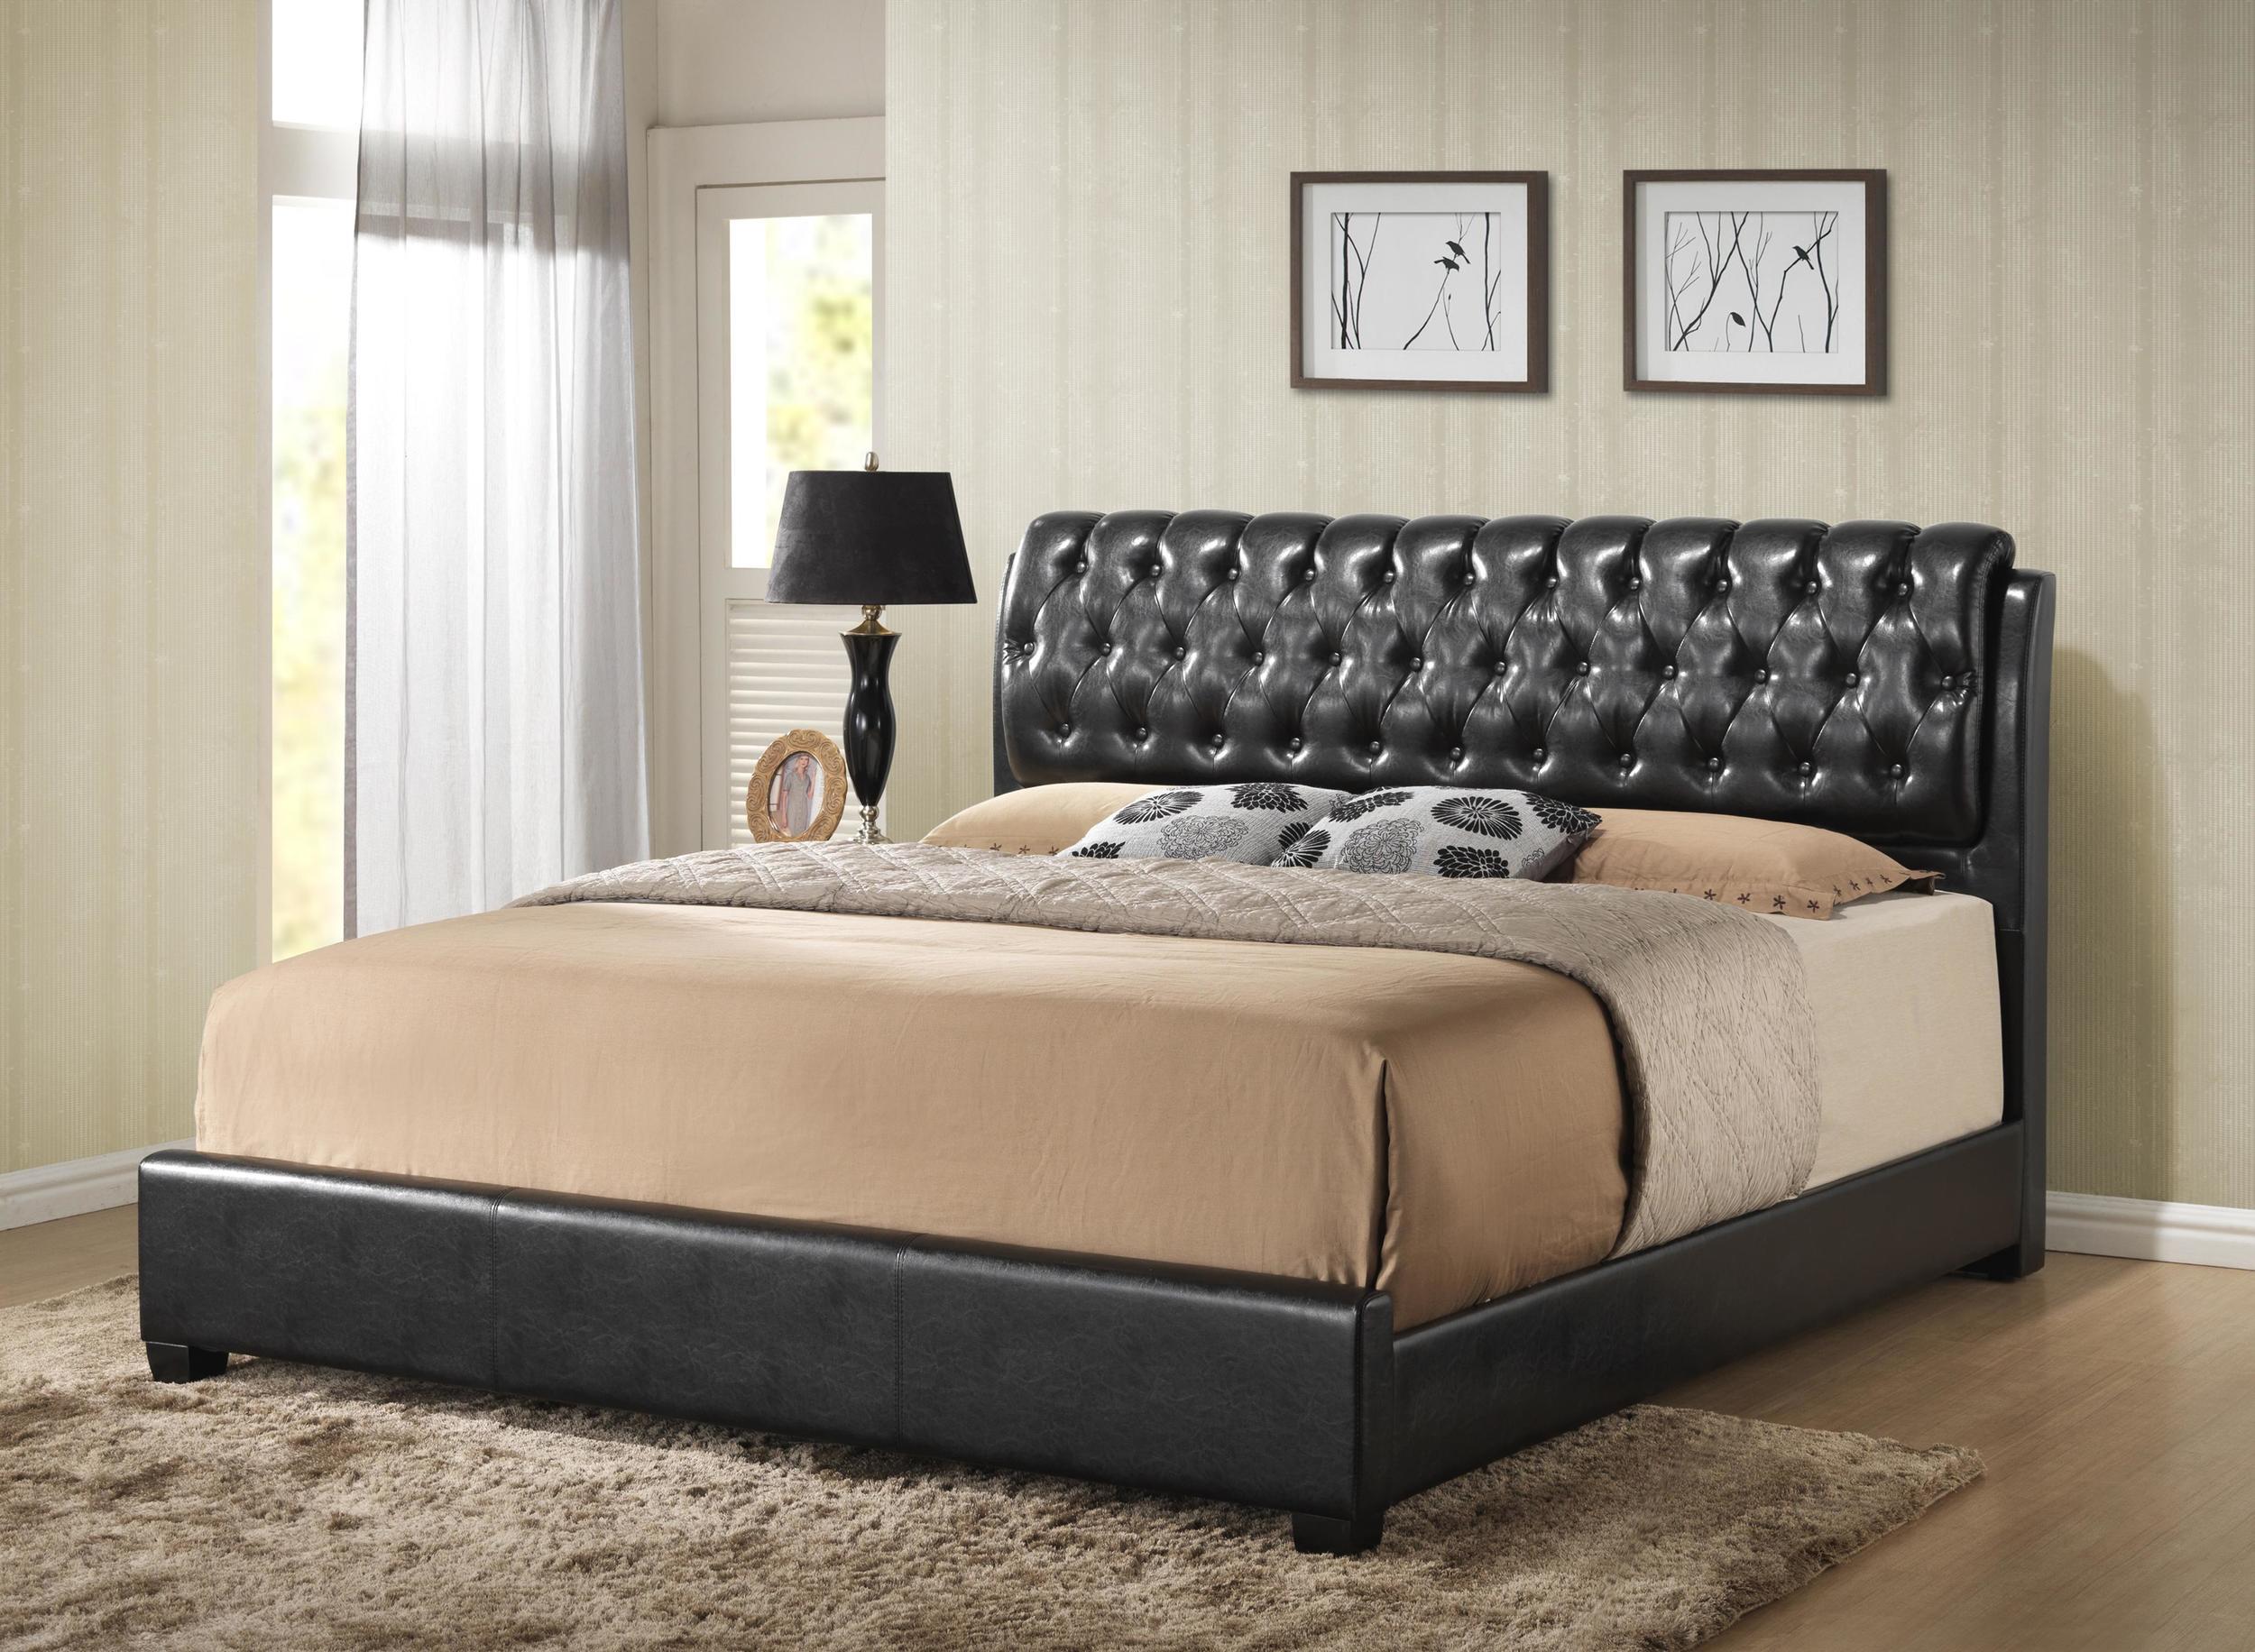 MYCO Furniture Barnes Platform Bed